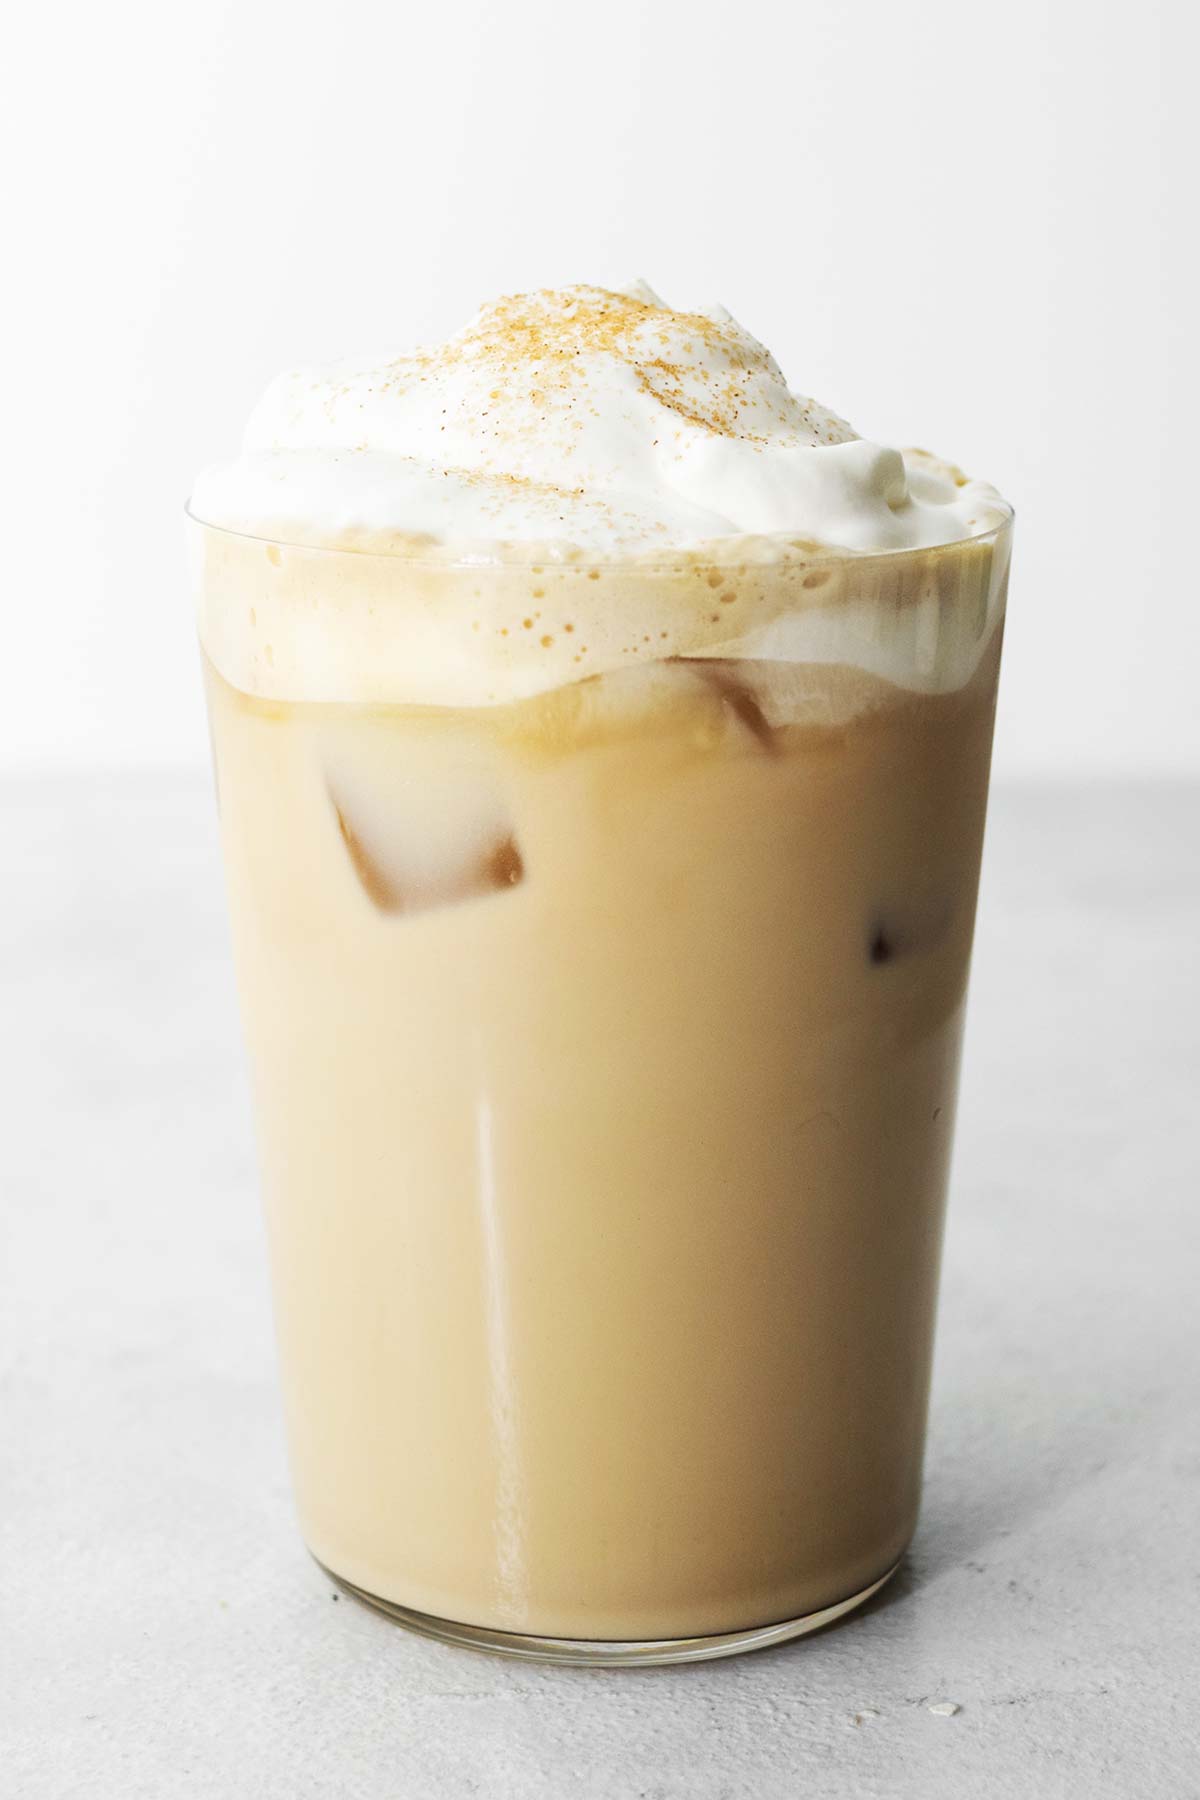 Starbucks Iced Cinnamon Dolce Latte copycat drankje in een kopje.